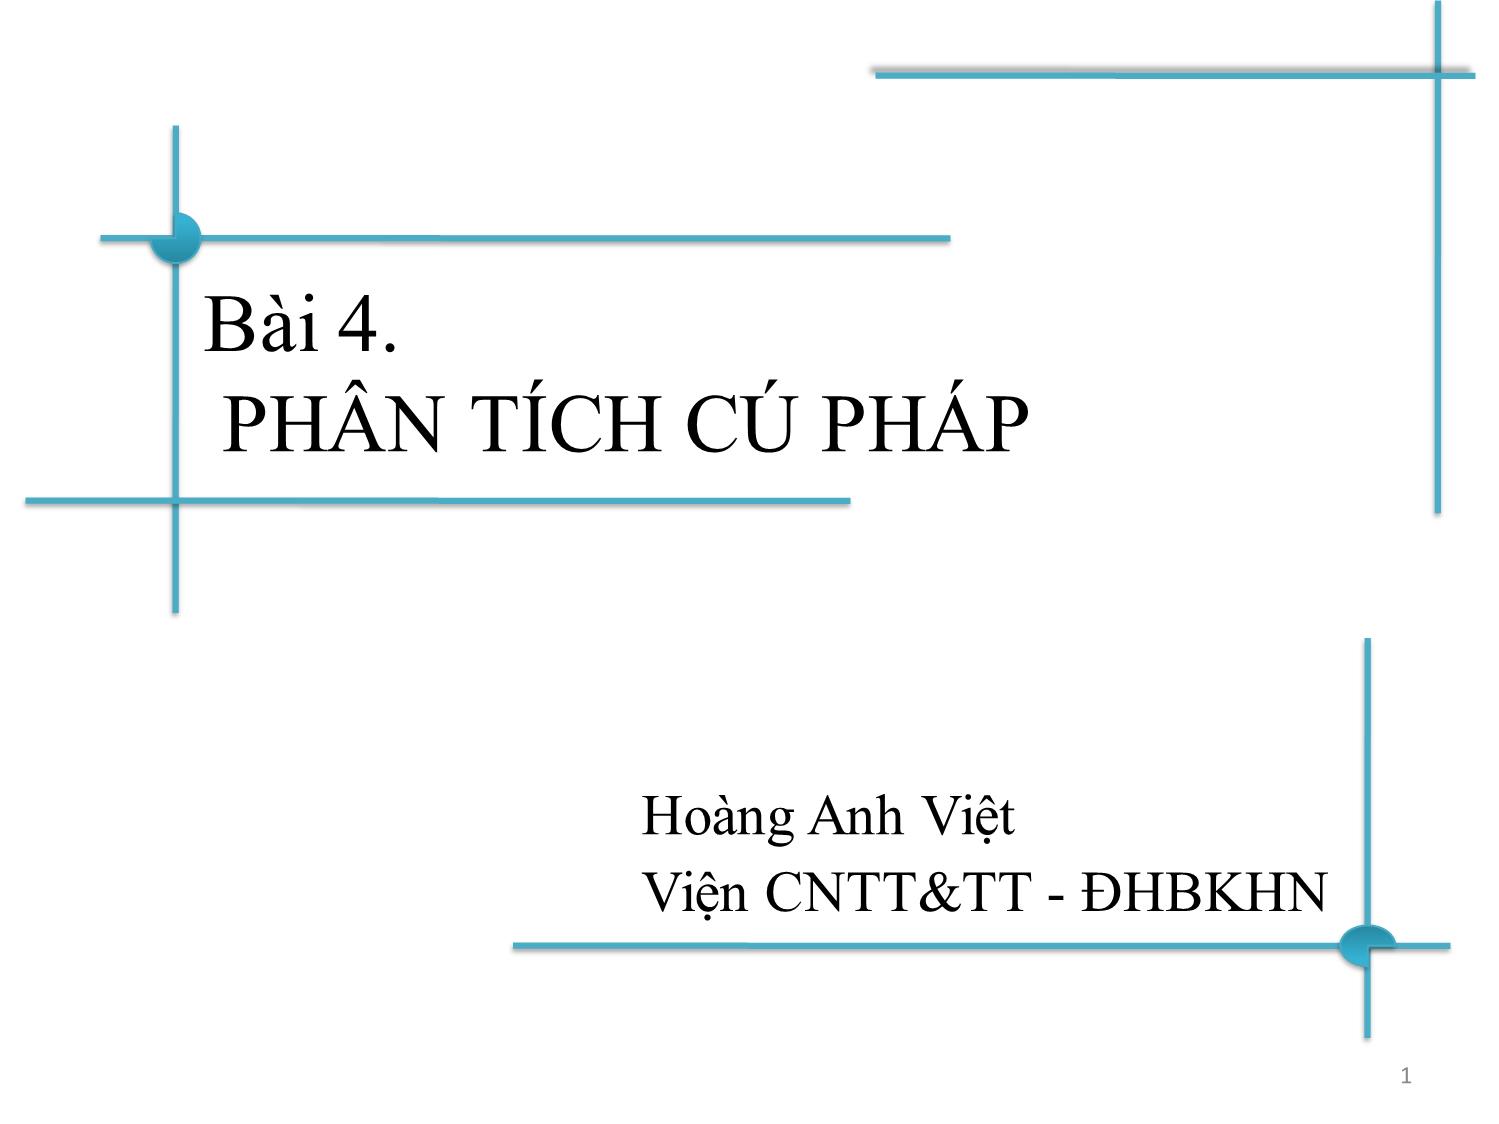 Bài giảng Chương trình dịch - Bài 4: Phân tích cú pháp từ dưới lên - Hoàng Anh Việt trang 1